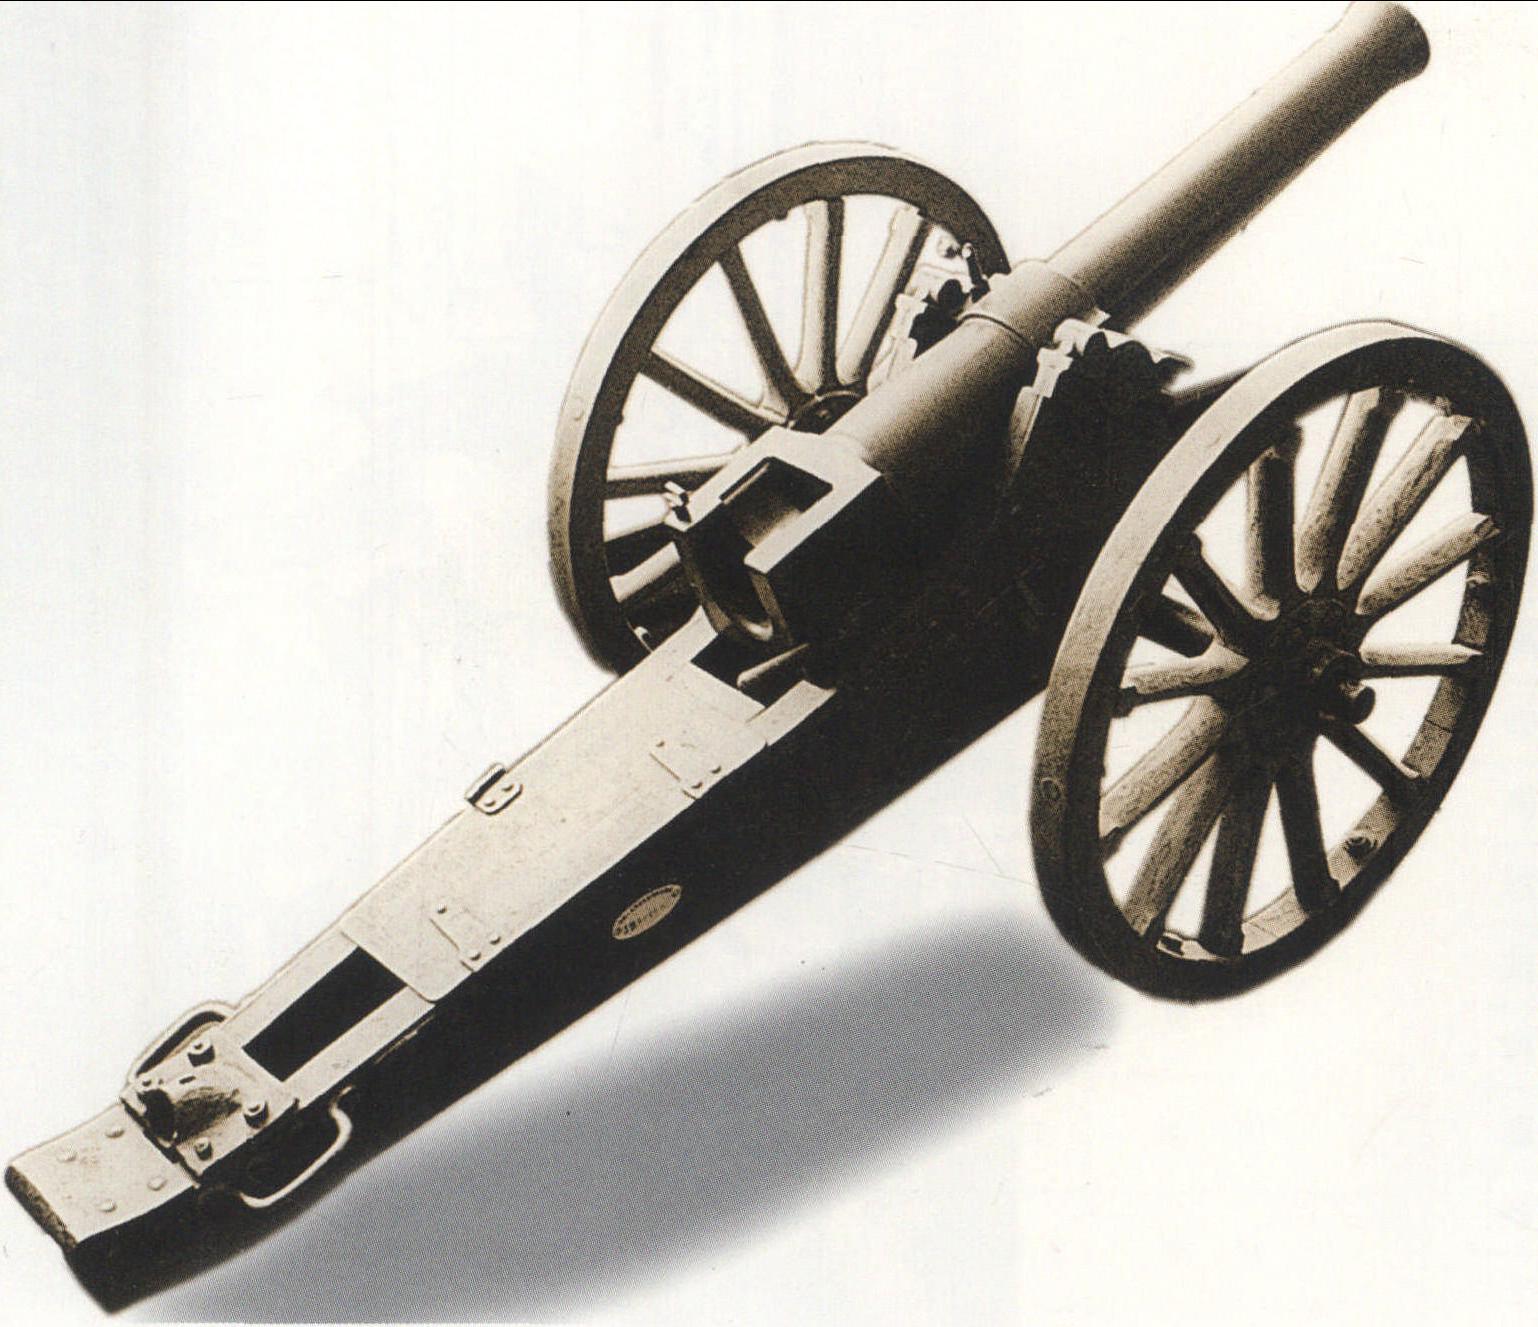 江南制造局生产的后膛钢炮。炮上铭文“光绪二十四年江南制造局造”